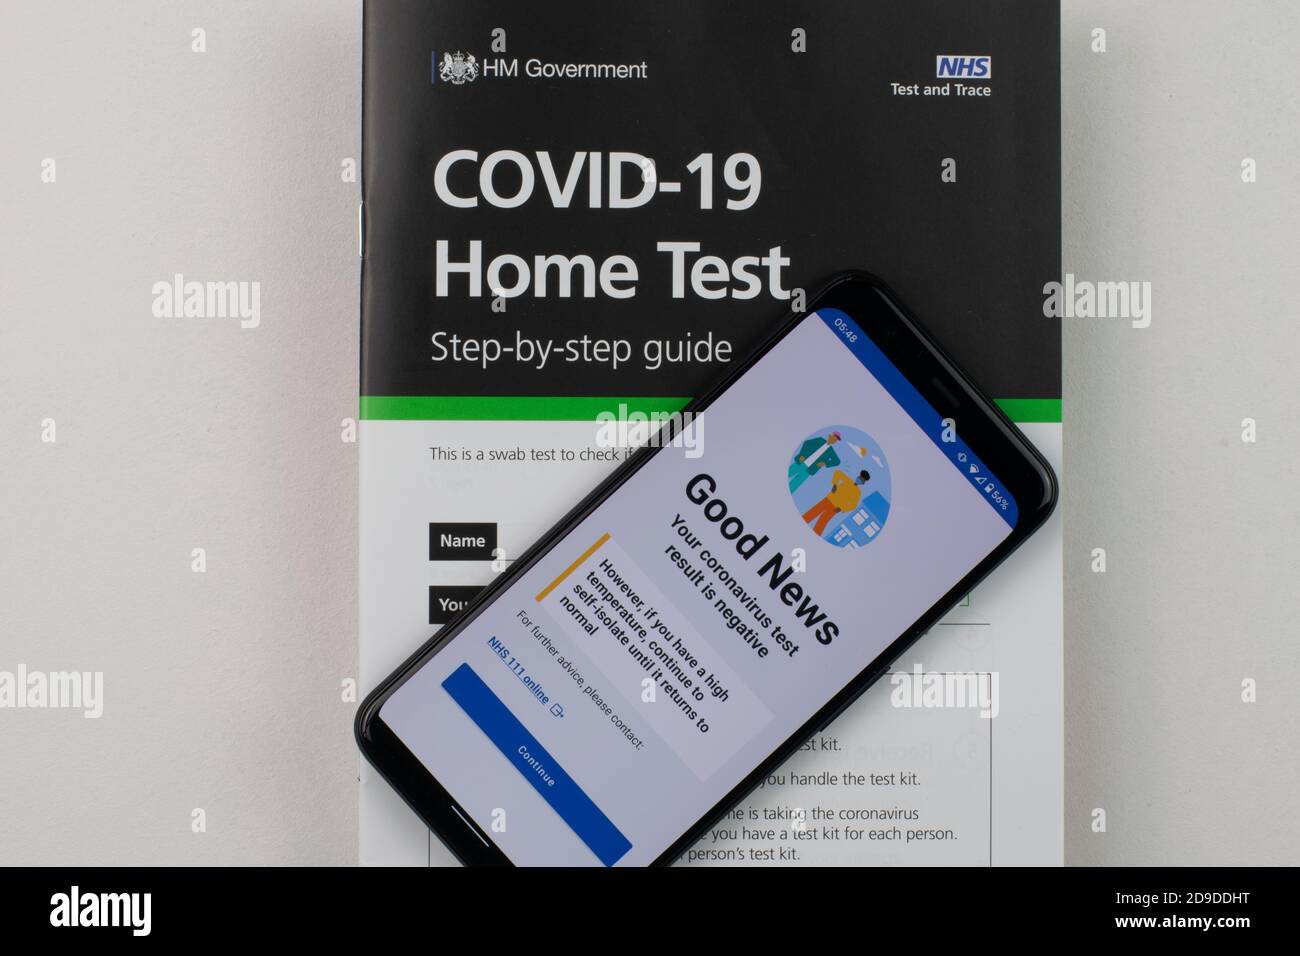 Risultato negativo del test del coronavirus sul telefono cellulare poggiato sul libretto di istruzioni per il kit di test COVID-19 home. Foto Stock